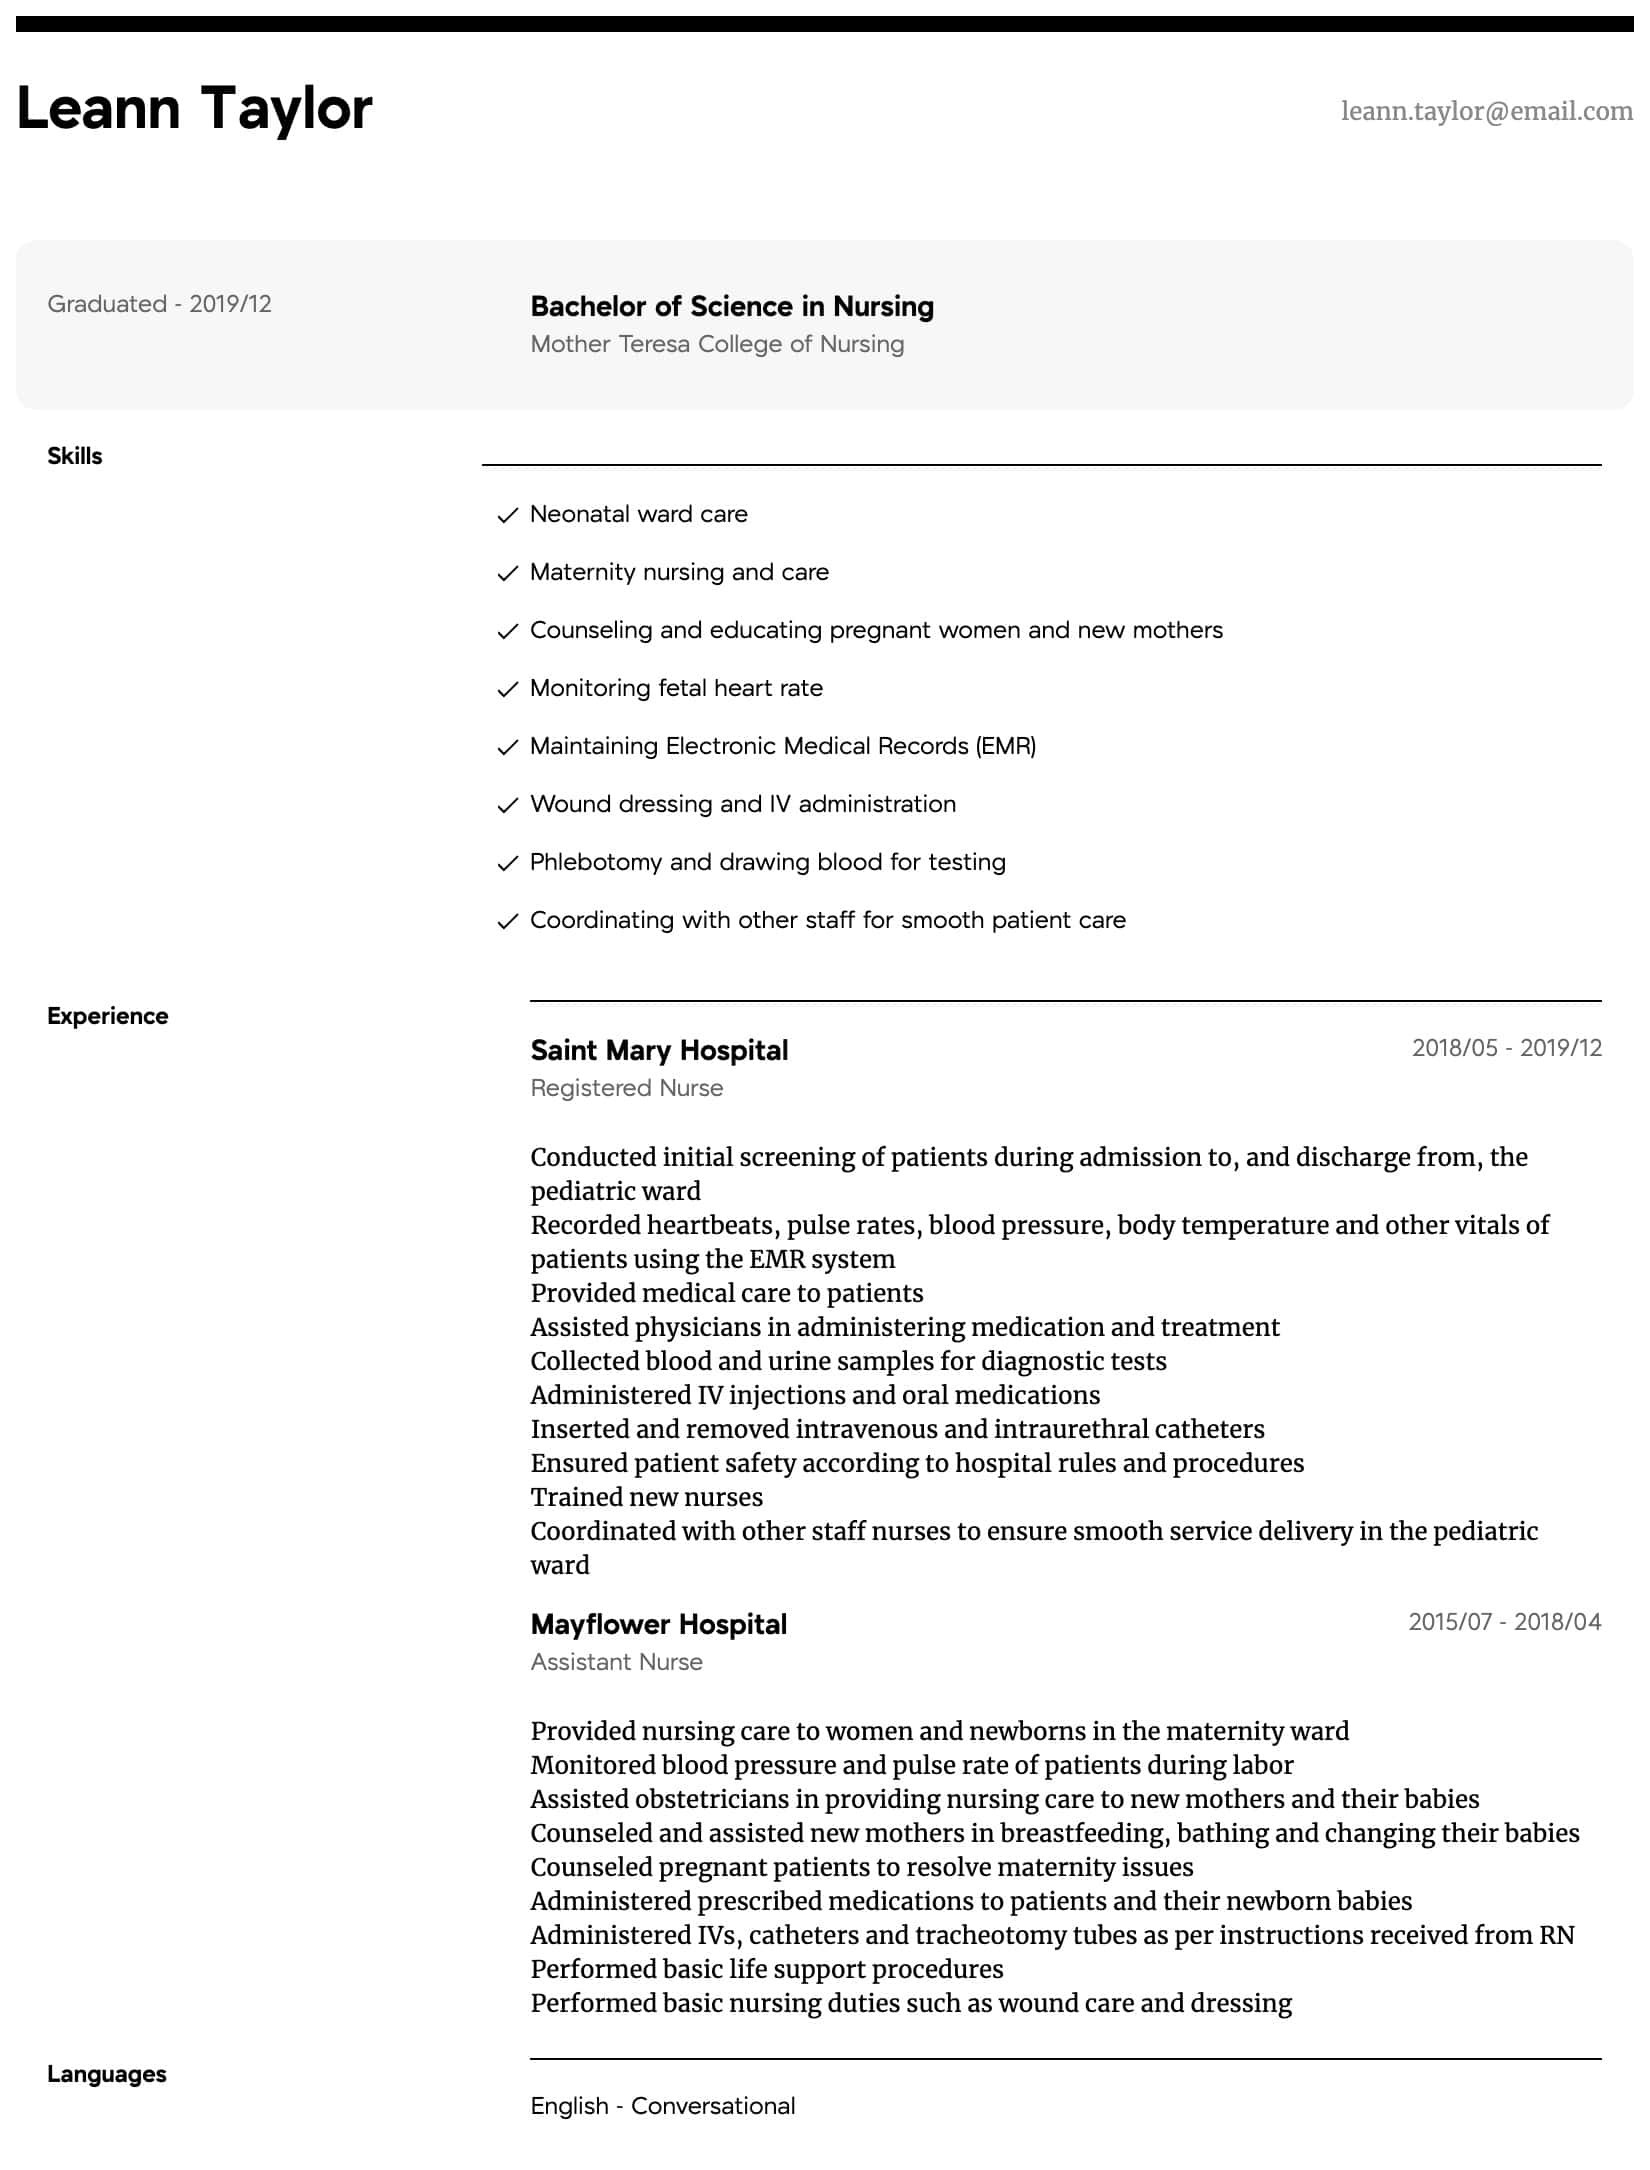 bsn nursing resume sample